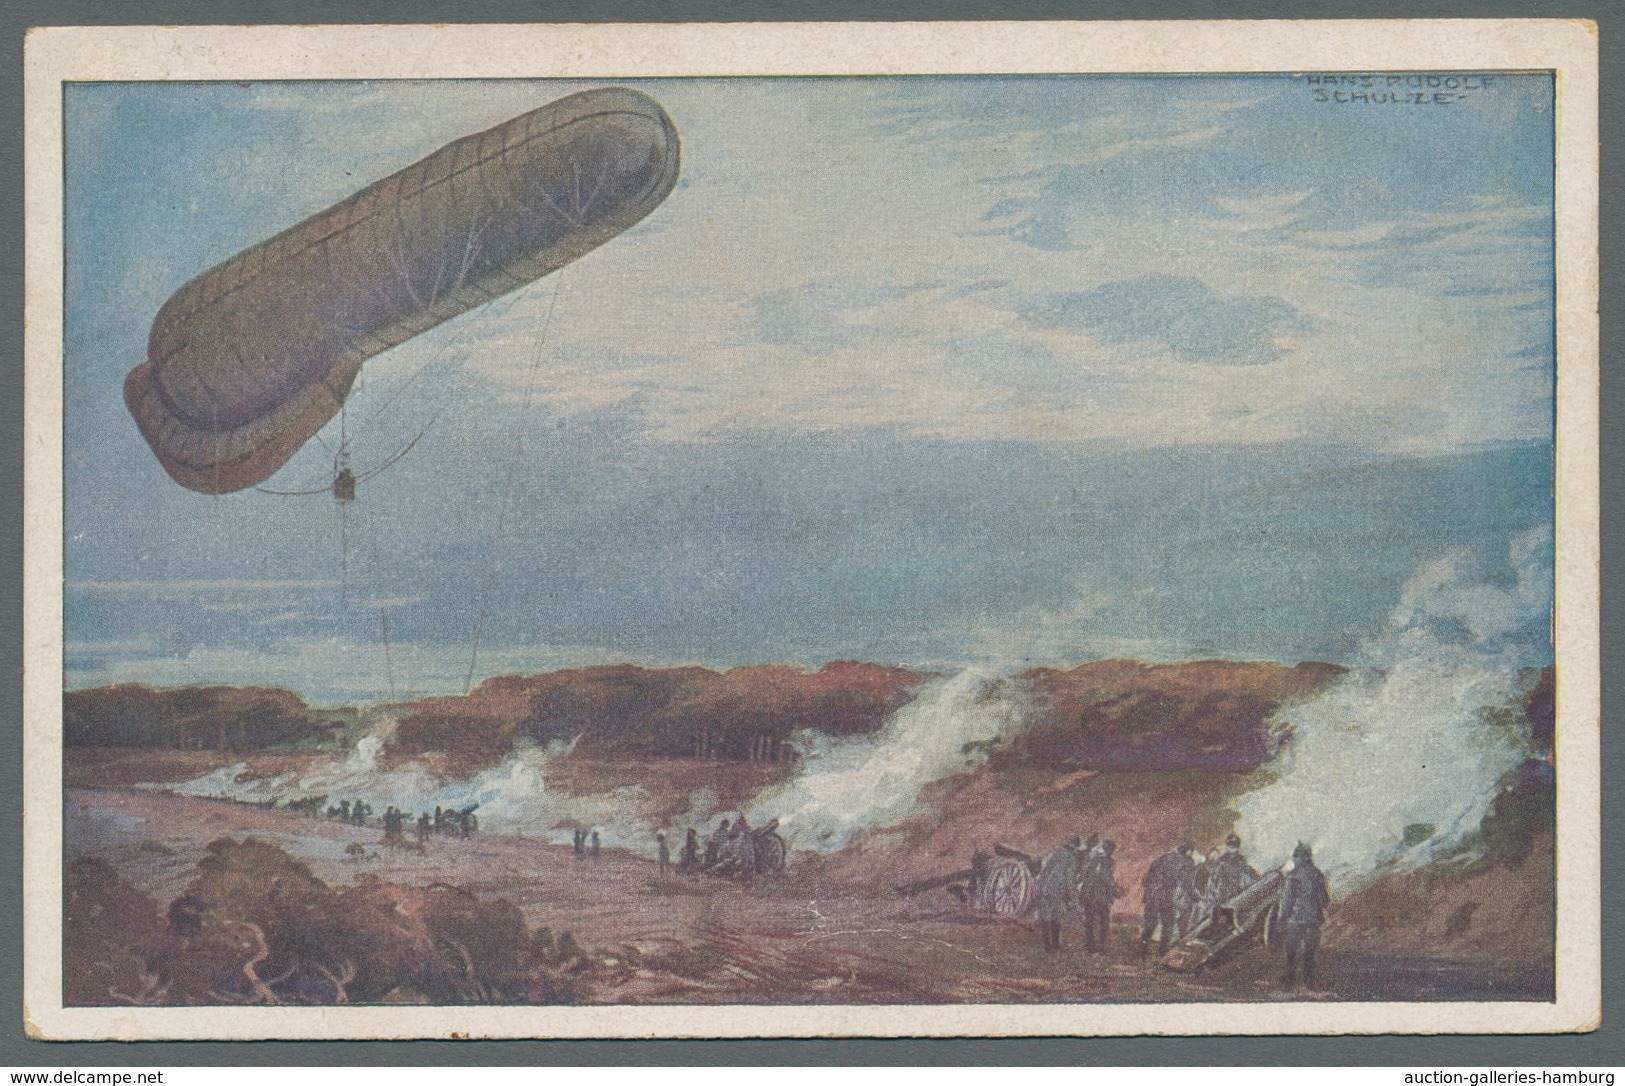 Flugpost Deutschland: 1914 (ca.), zwölf verschiedene oft Colorkarten des "Deutschen Luftflotten-Vere